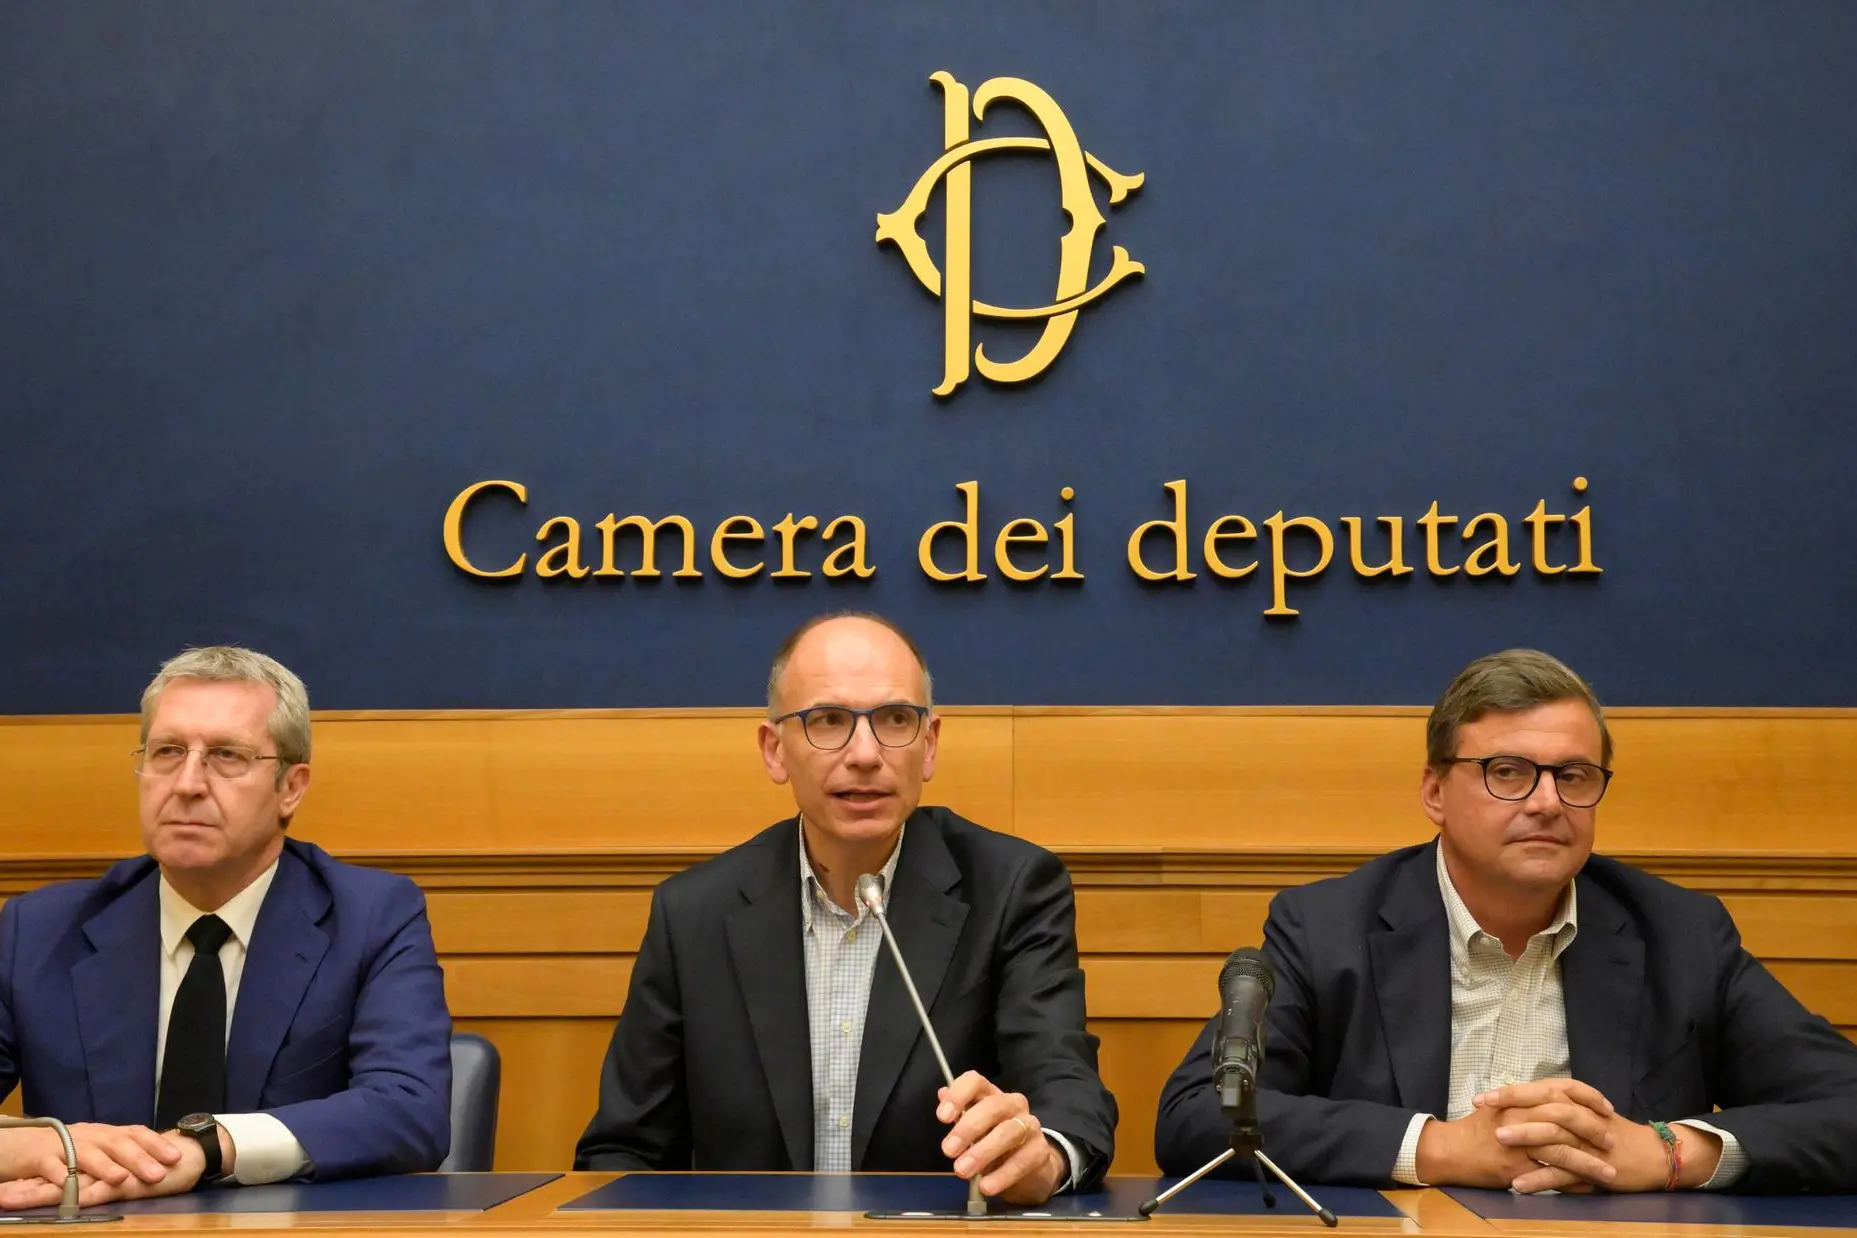 Da sinistra: Benedetto Della Vedova, Enrico Letta e Carlo Calenda in conferenza stampa (foto Ansa)